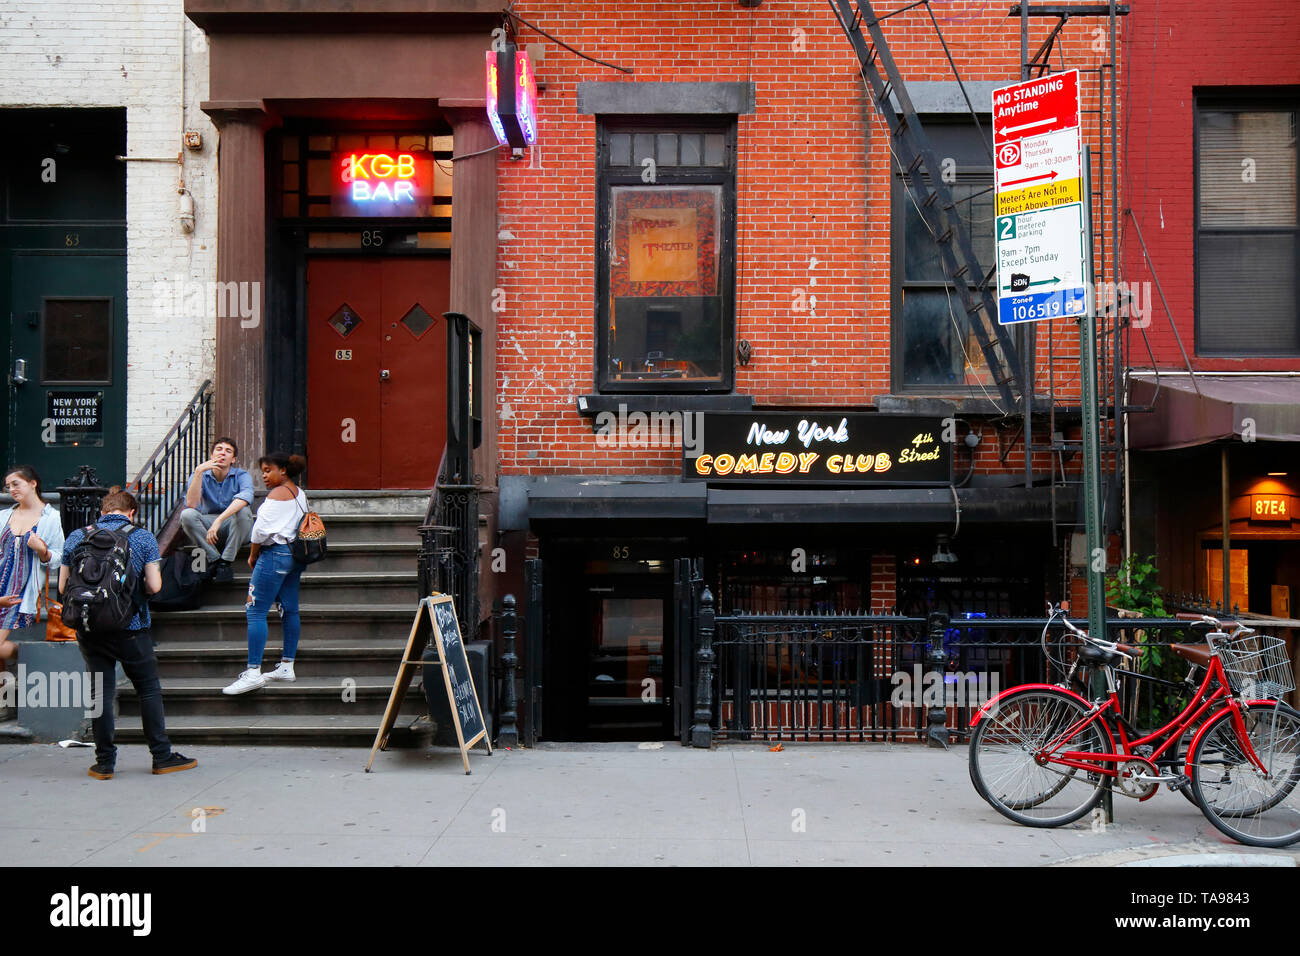 La camera rossa, KGB Bar, New York Comedy Club, 85 e quarta St, New York, NY. esterno alla vetrina di un bar e di un comedy club nell'East Village di Manhattan. Foto Stock